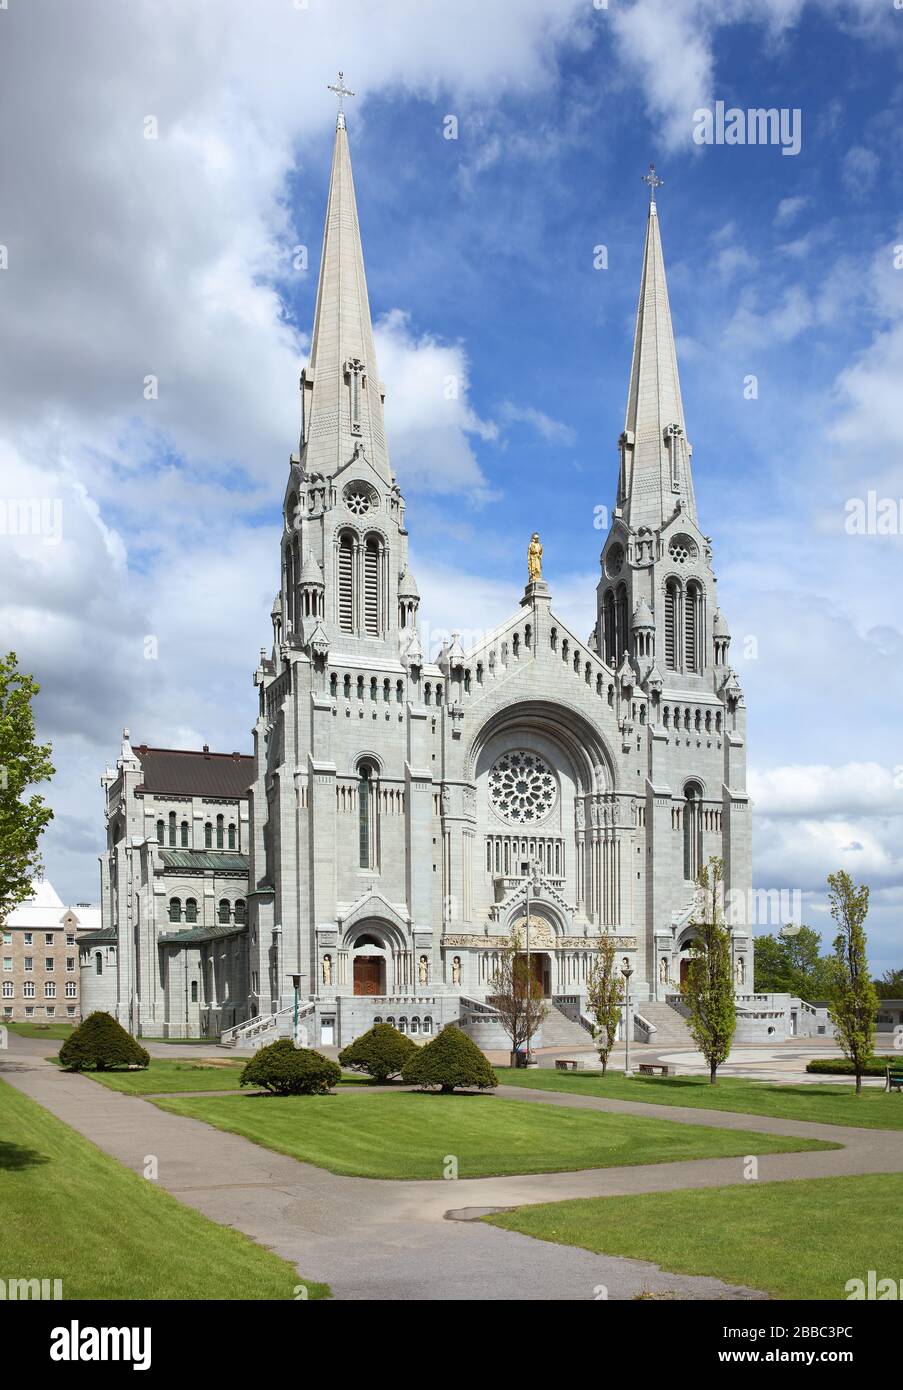 Facade of the Basilica of Sainte-Anne-de-Beaupre, Sainte-Anne-de-Beaupre, Quebec, Canada Stock Photo